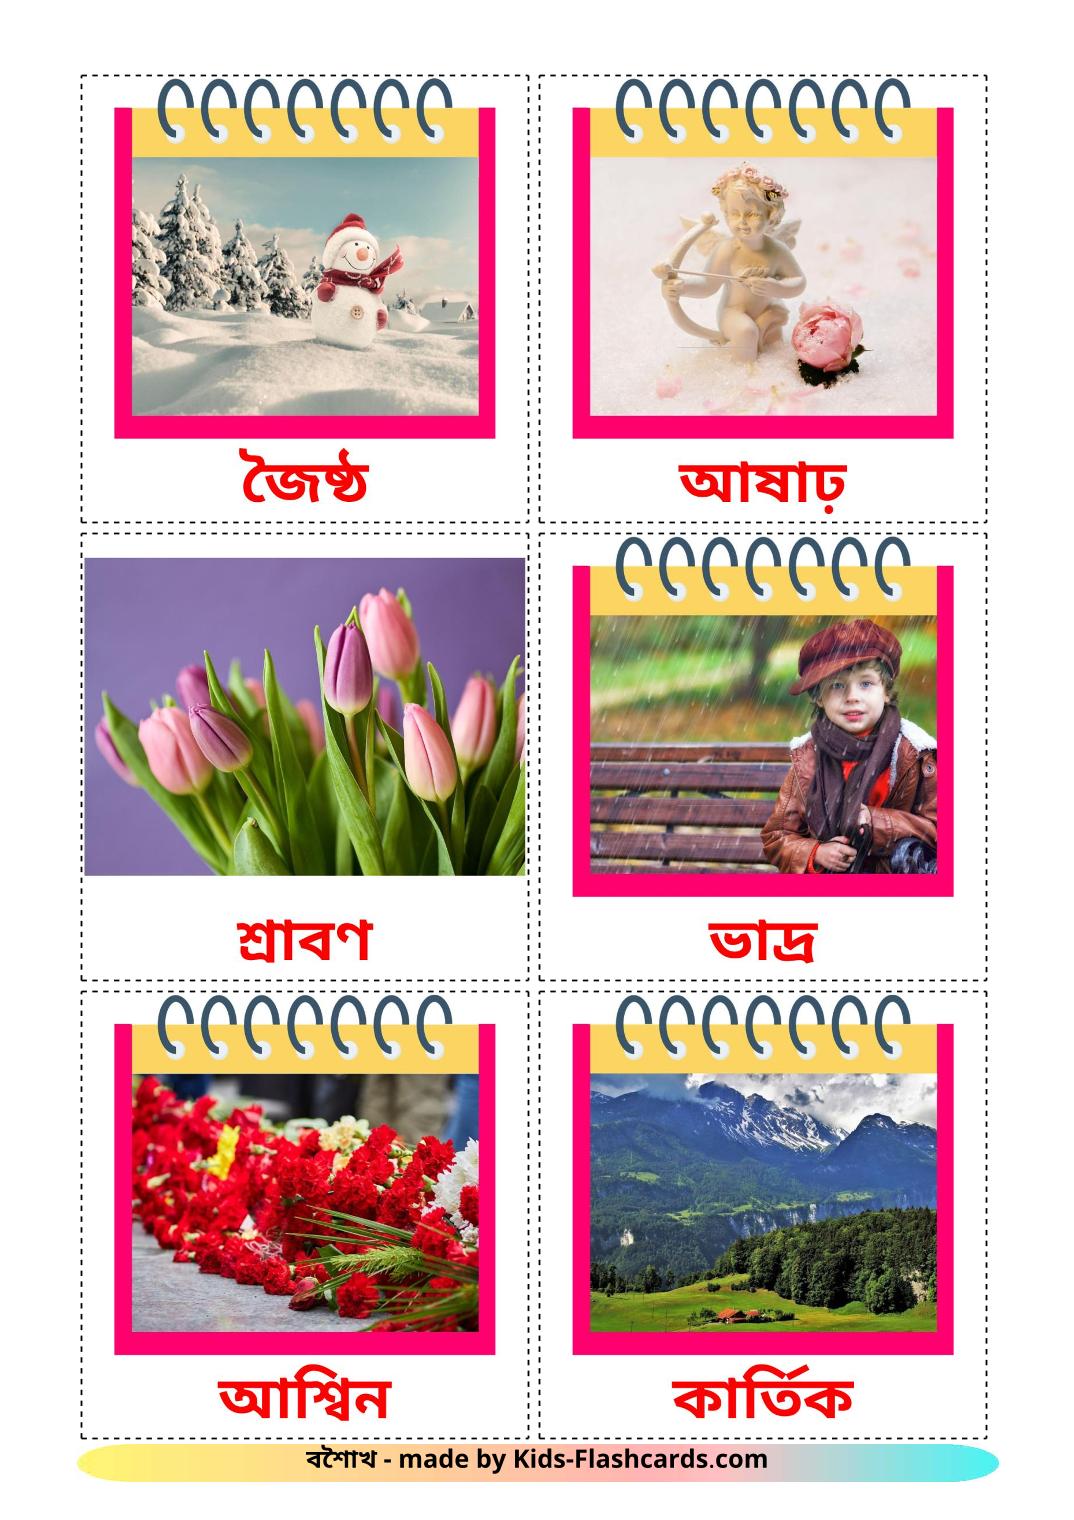 Les Mois de l'année - 12 Flashcards bengali imprimables gratuitement